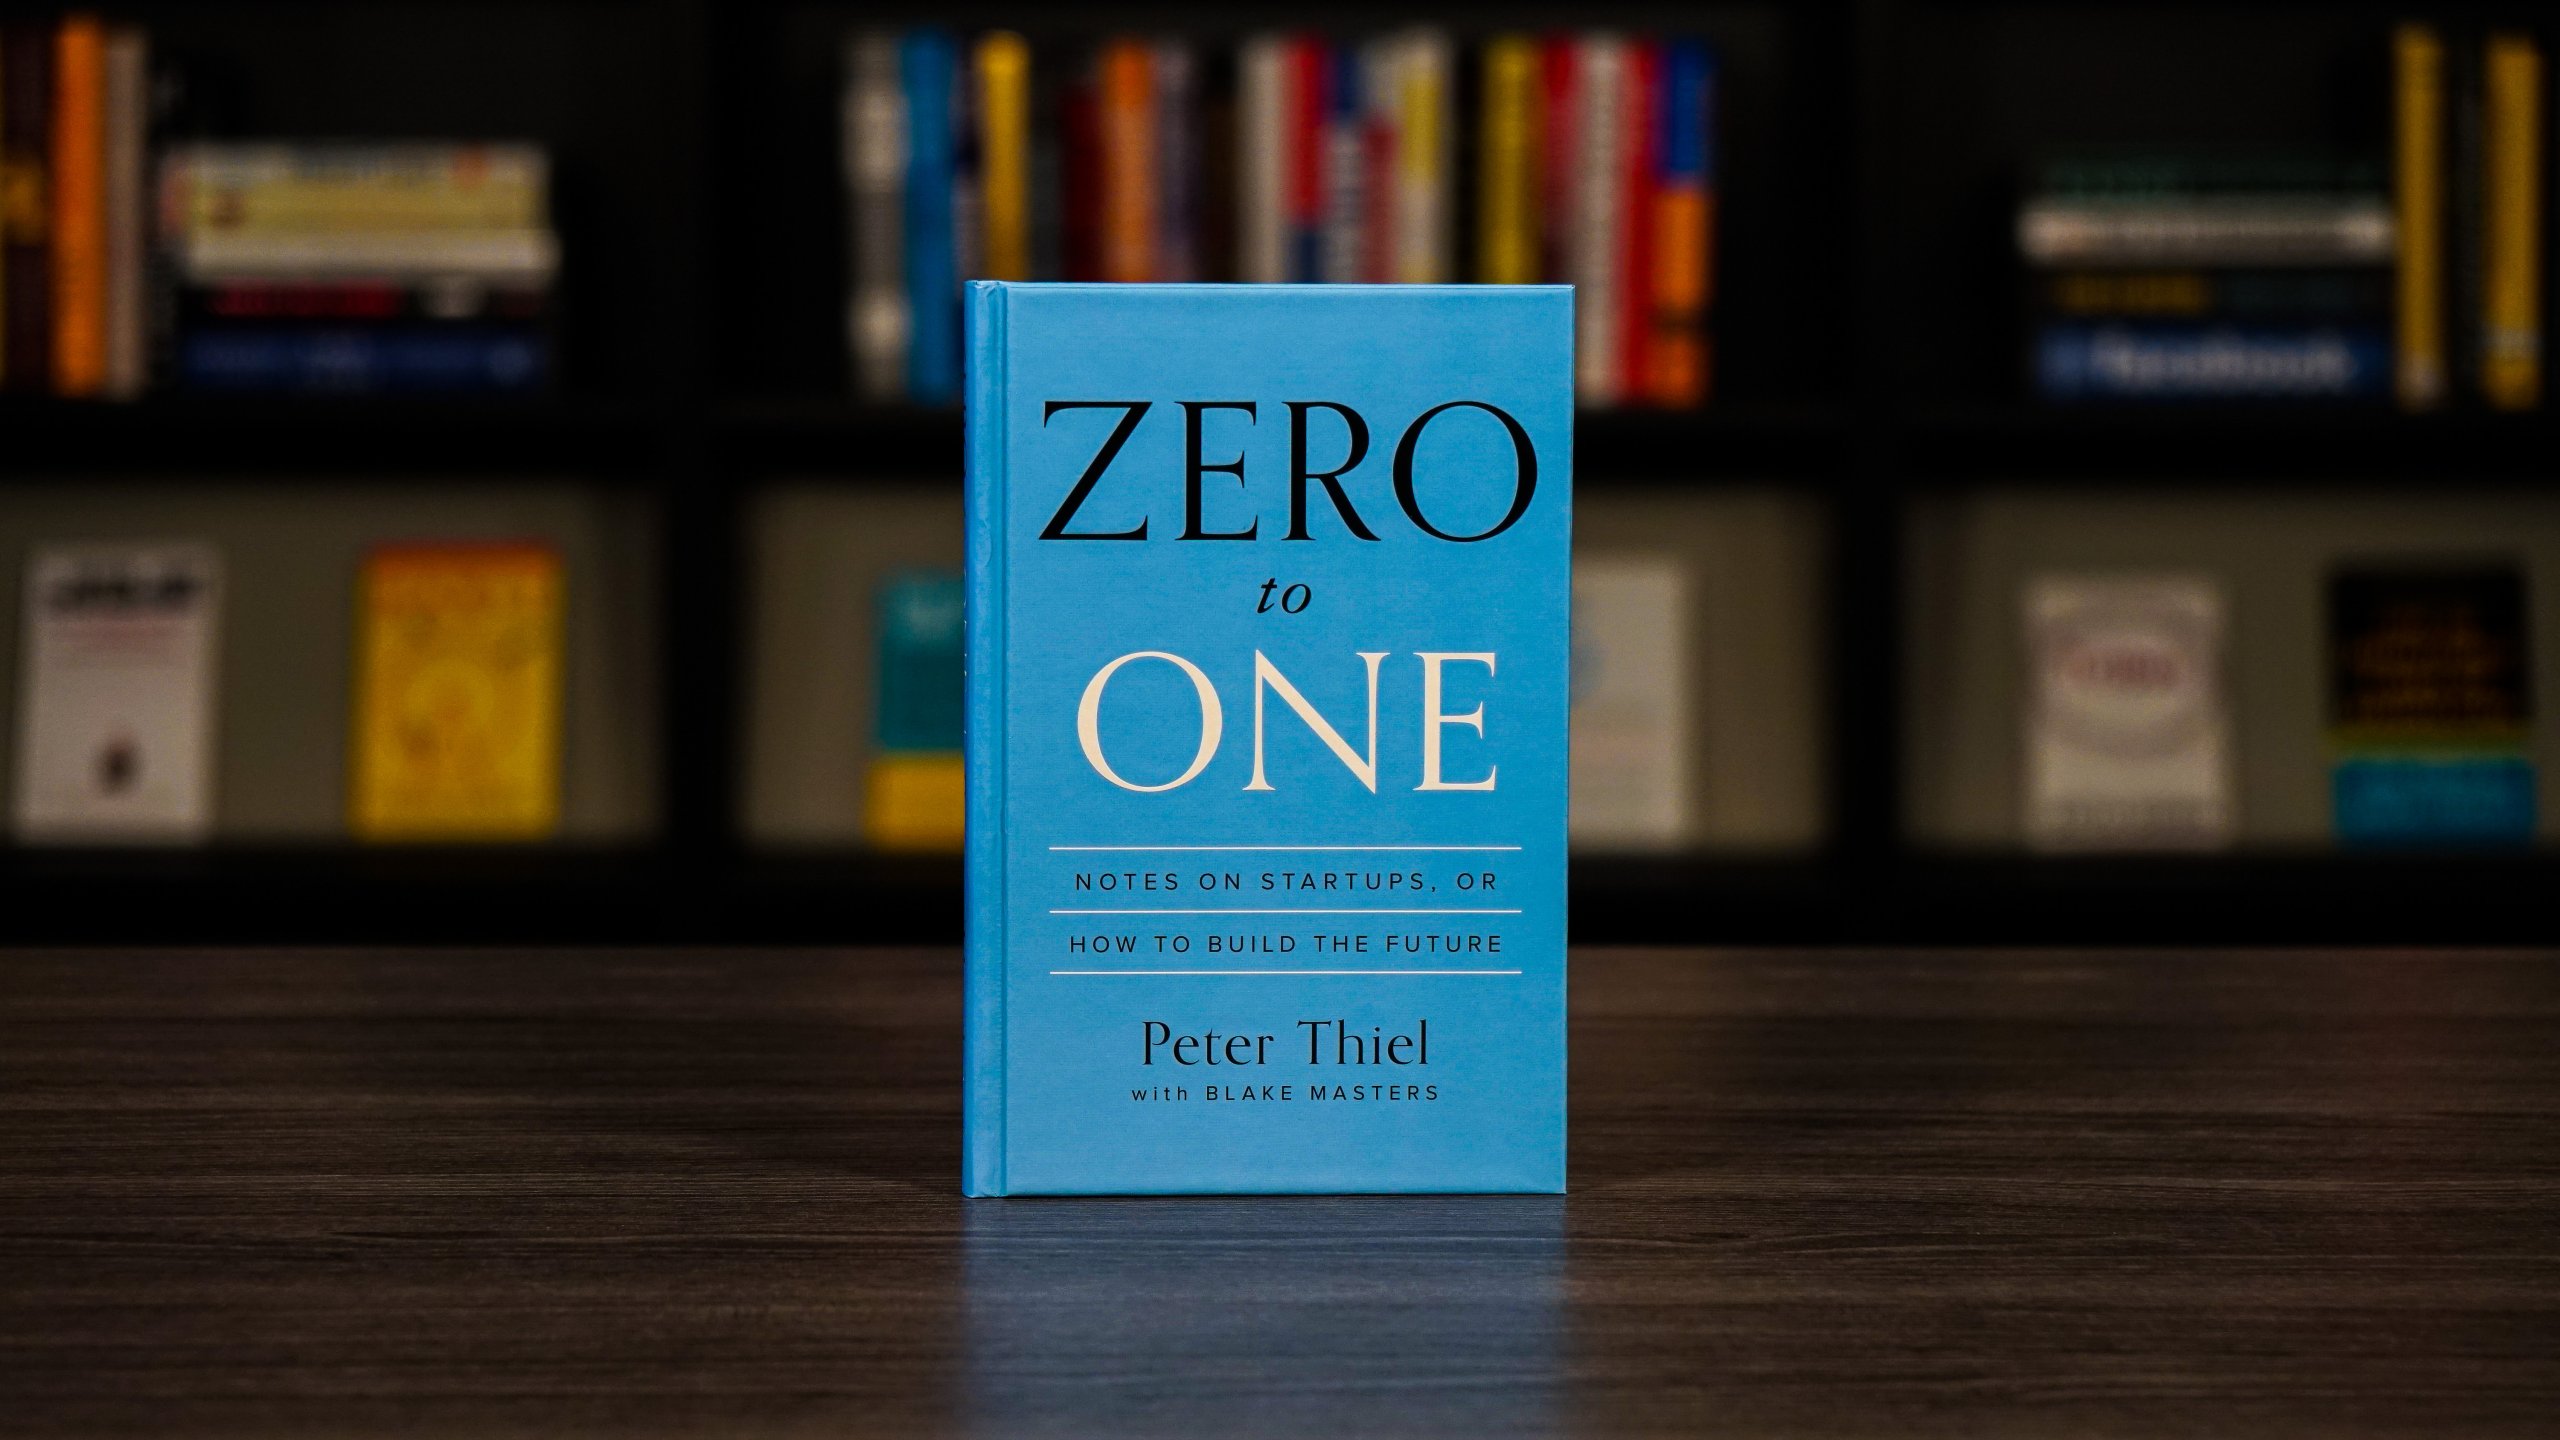 numero zero book review